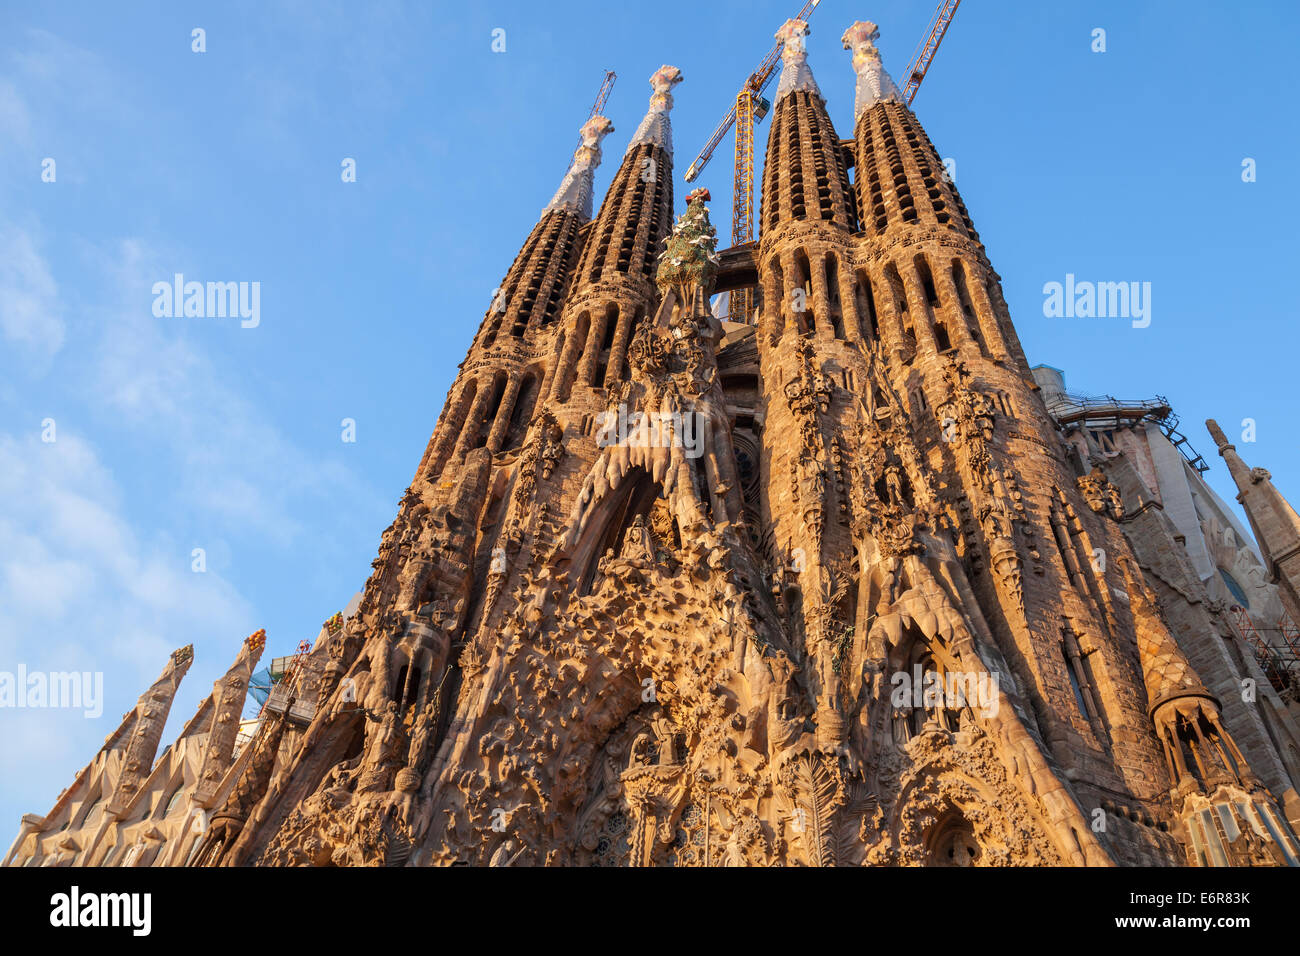 Barcelone, Espagne - 27 août 2014 : La Sagrada Familia, la cathédrale conçu par Antoni Gaudi Banque D'Images